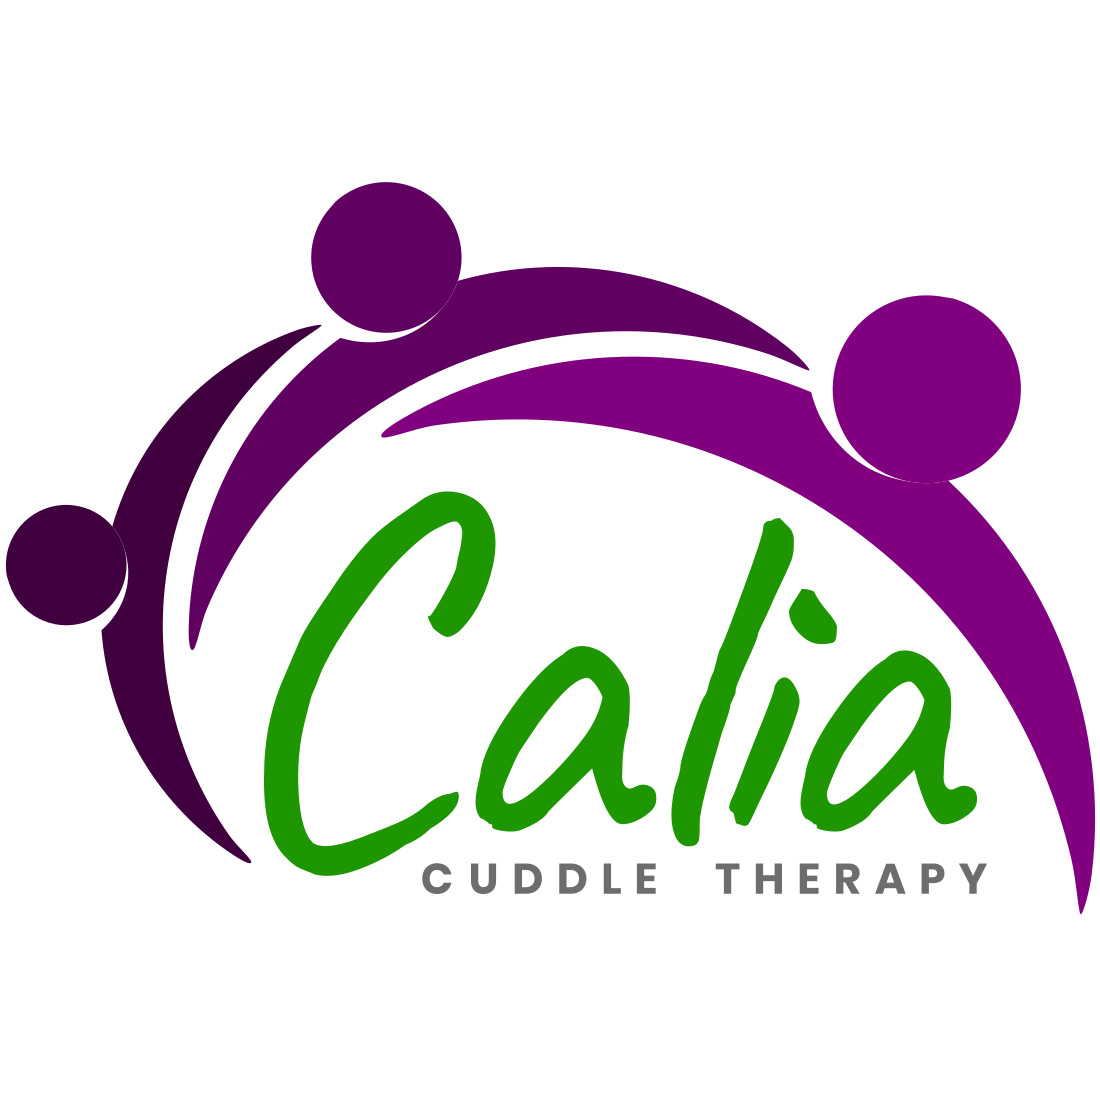 Calia Cuddle Therapy